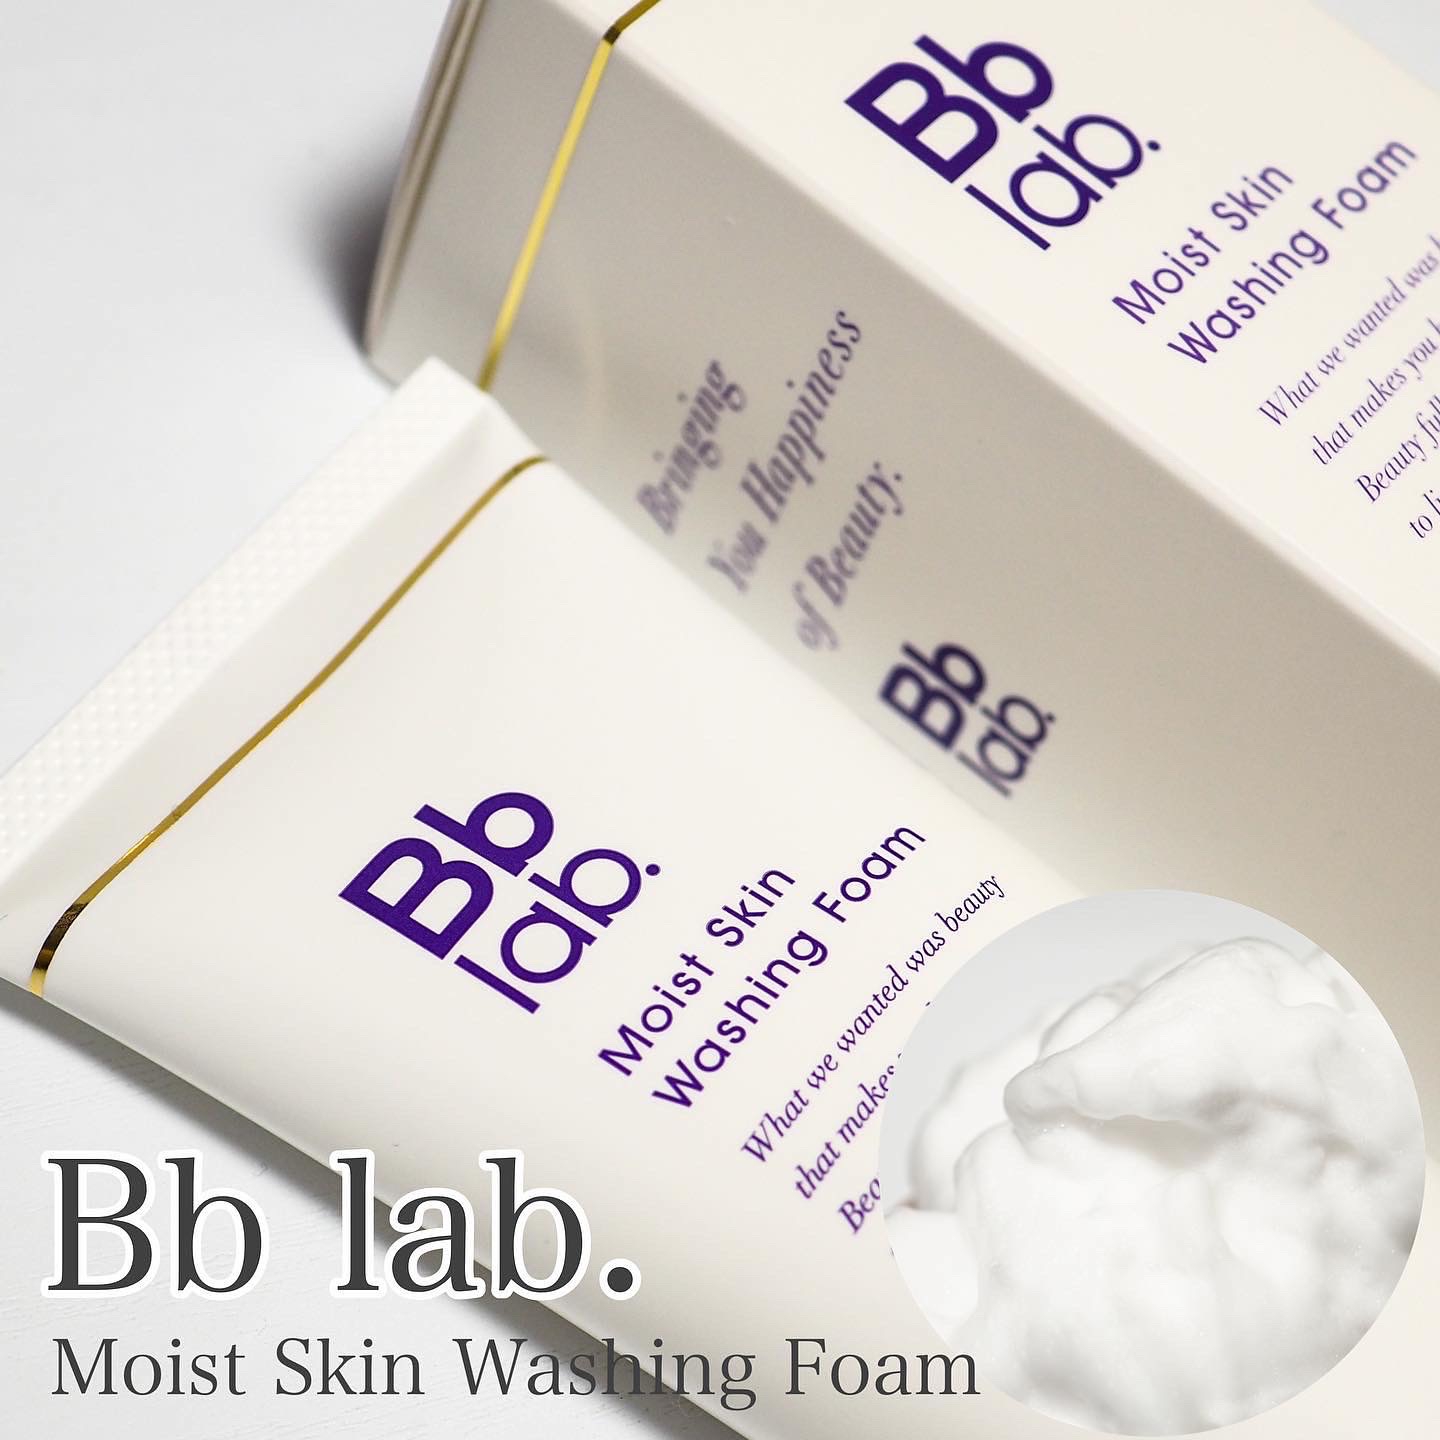 Bb lab.Moist Skin Washing Foamを使ったaquaさんのクチコミ画像1